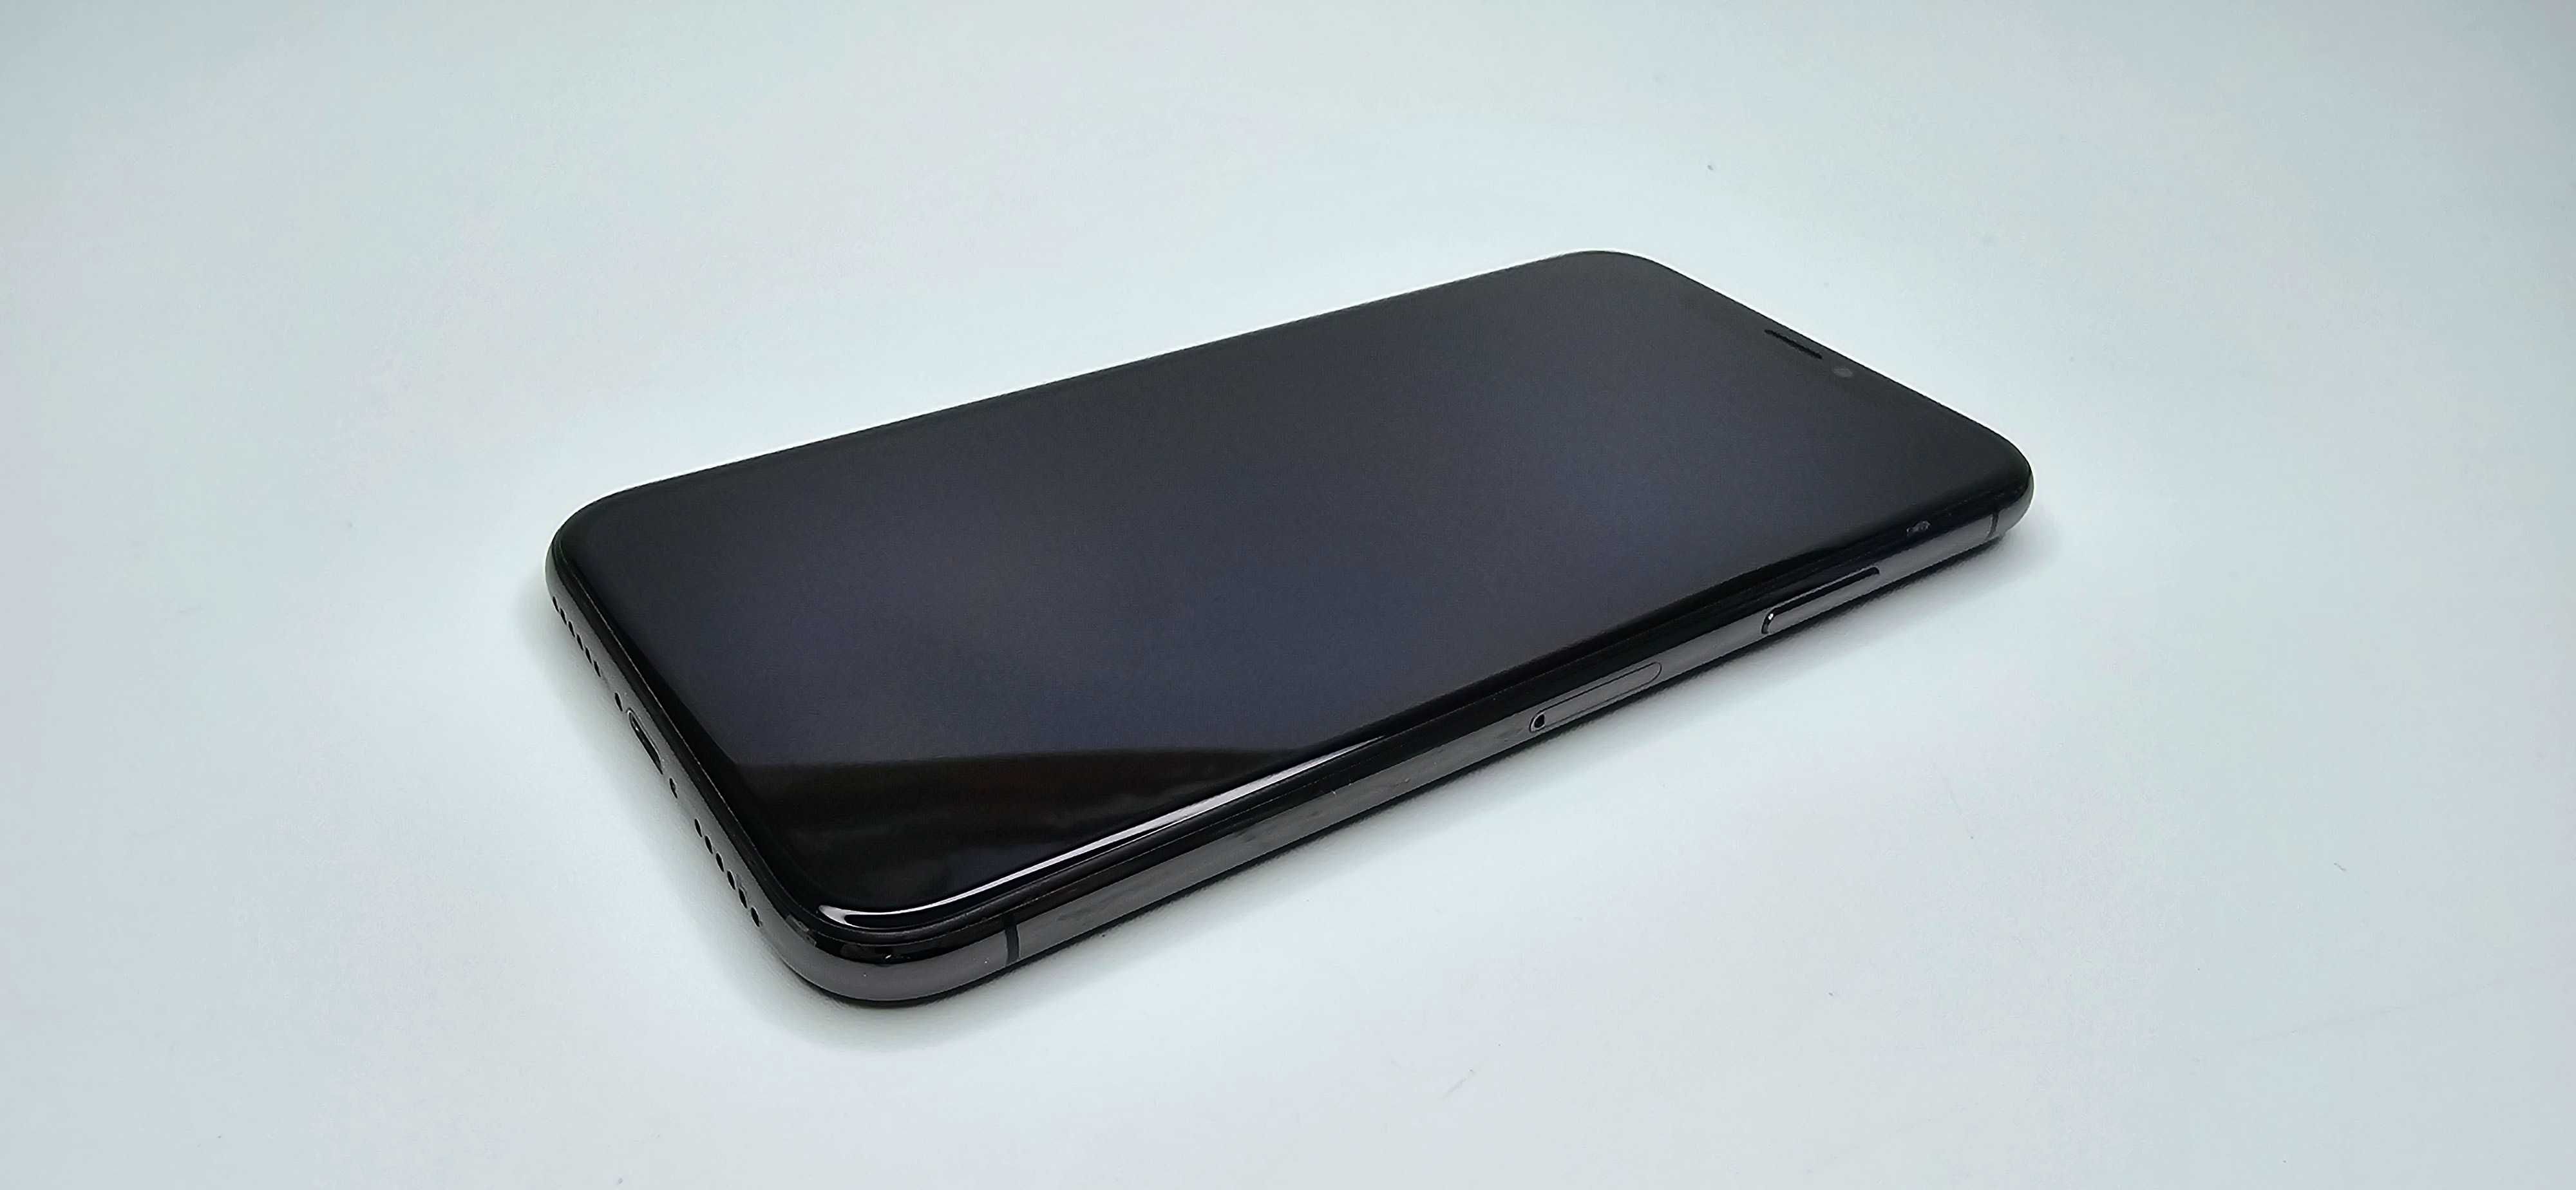 iPhone X 64GB komplet, gwarancja, 100% bateria